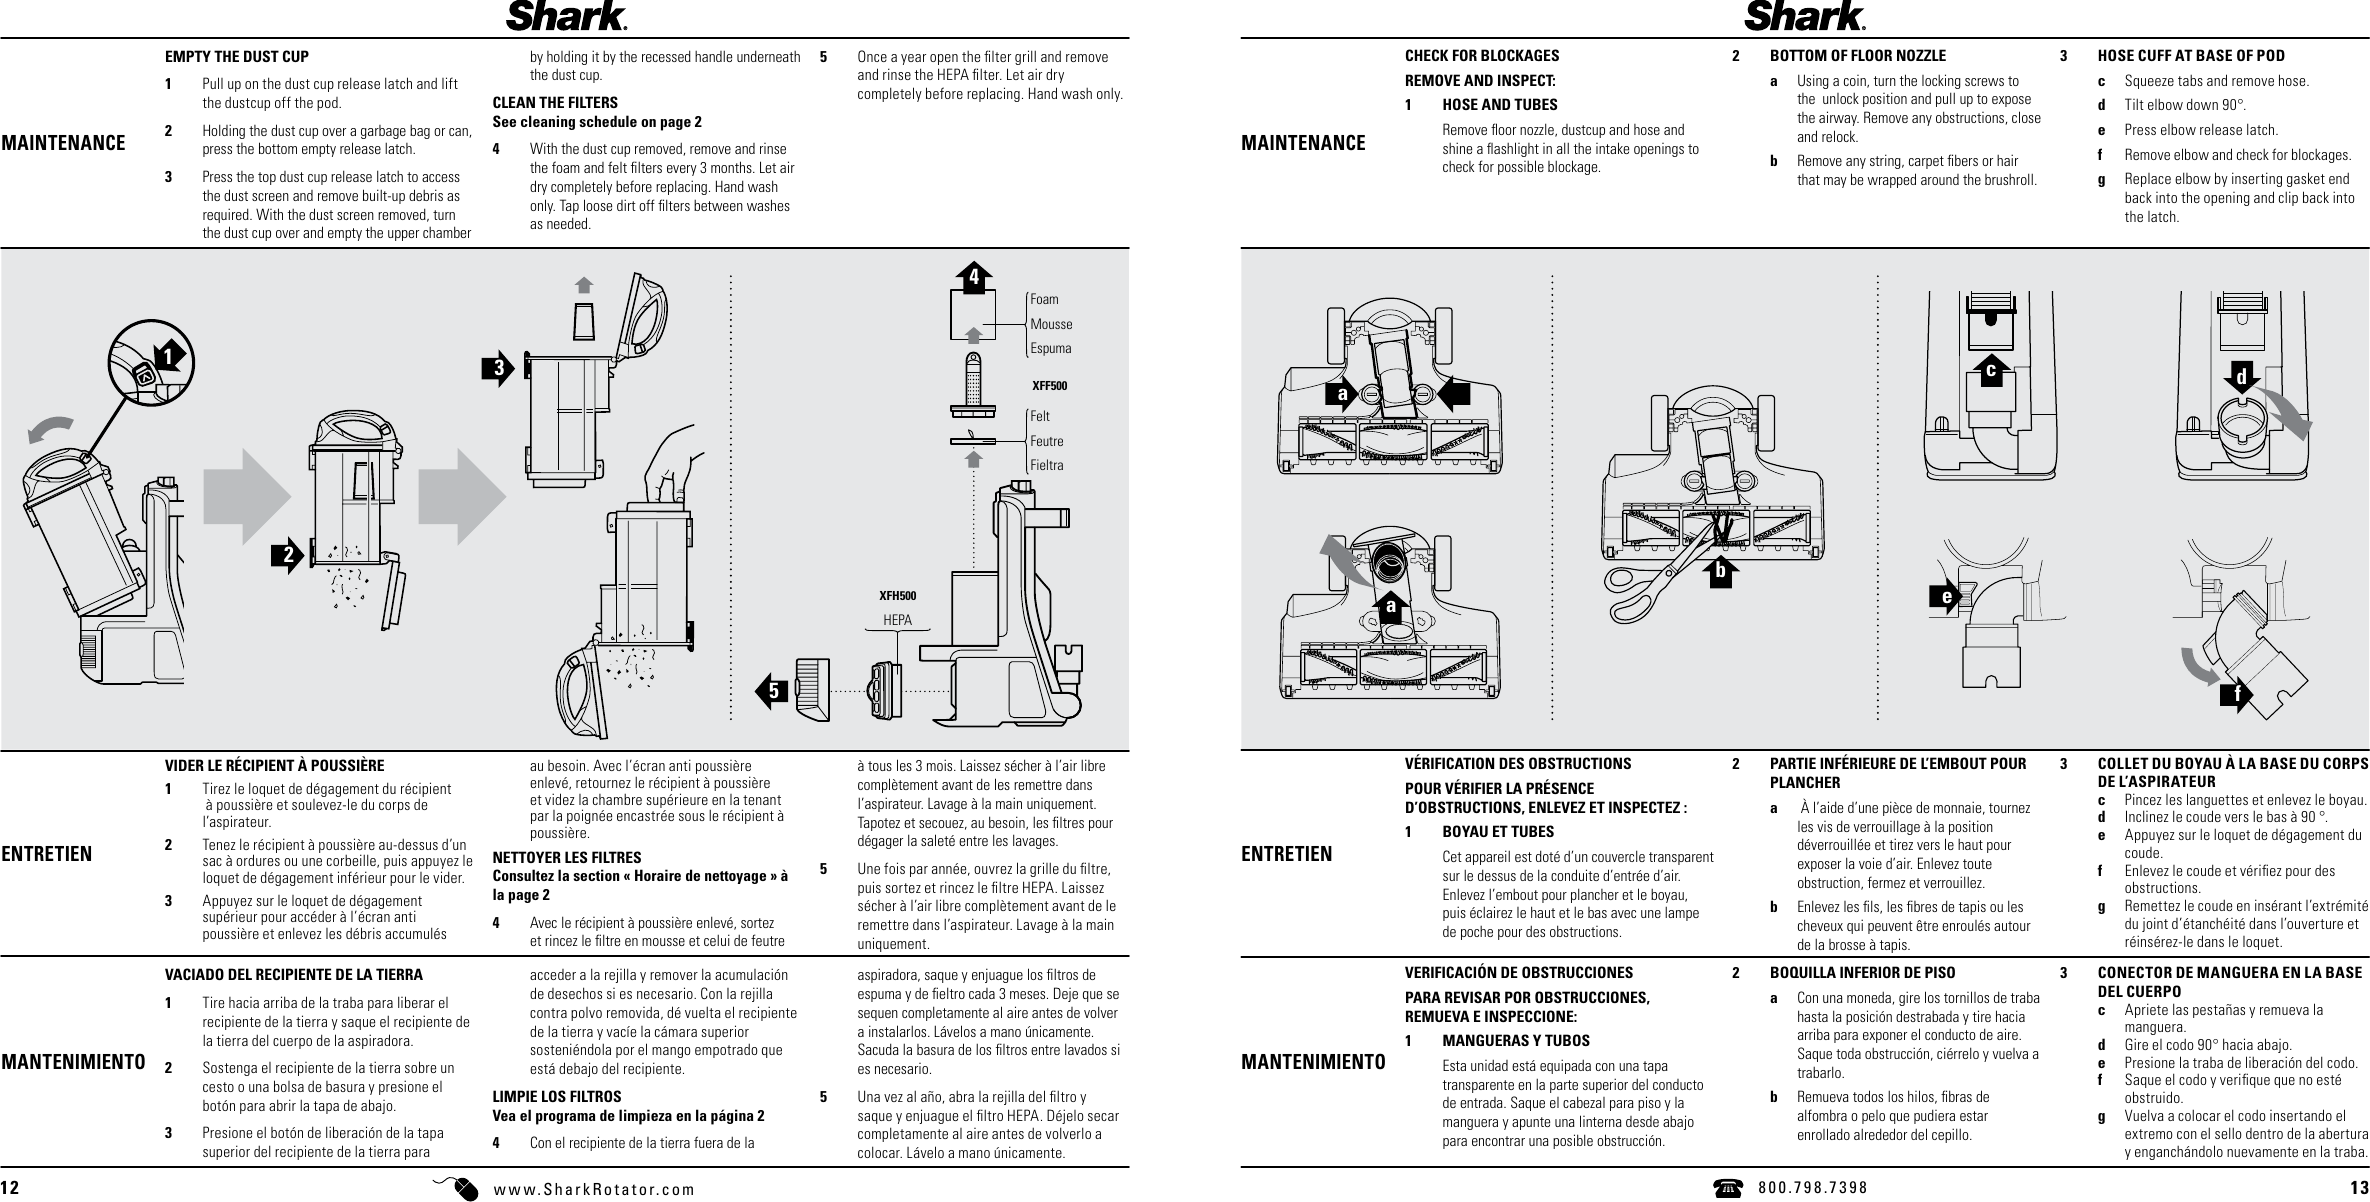 Shark Rotator Vacuum Manual